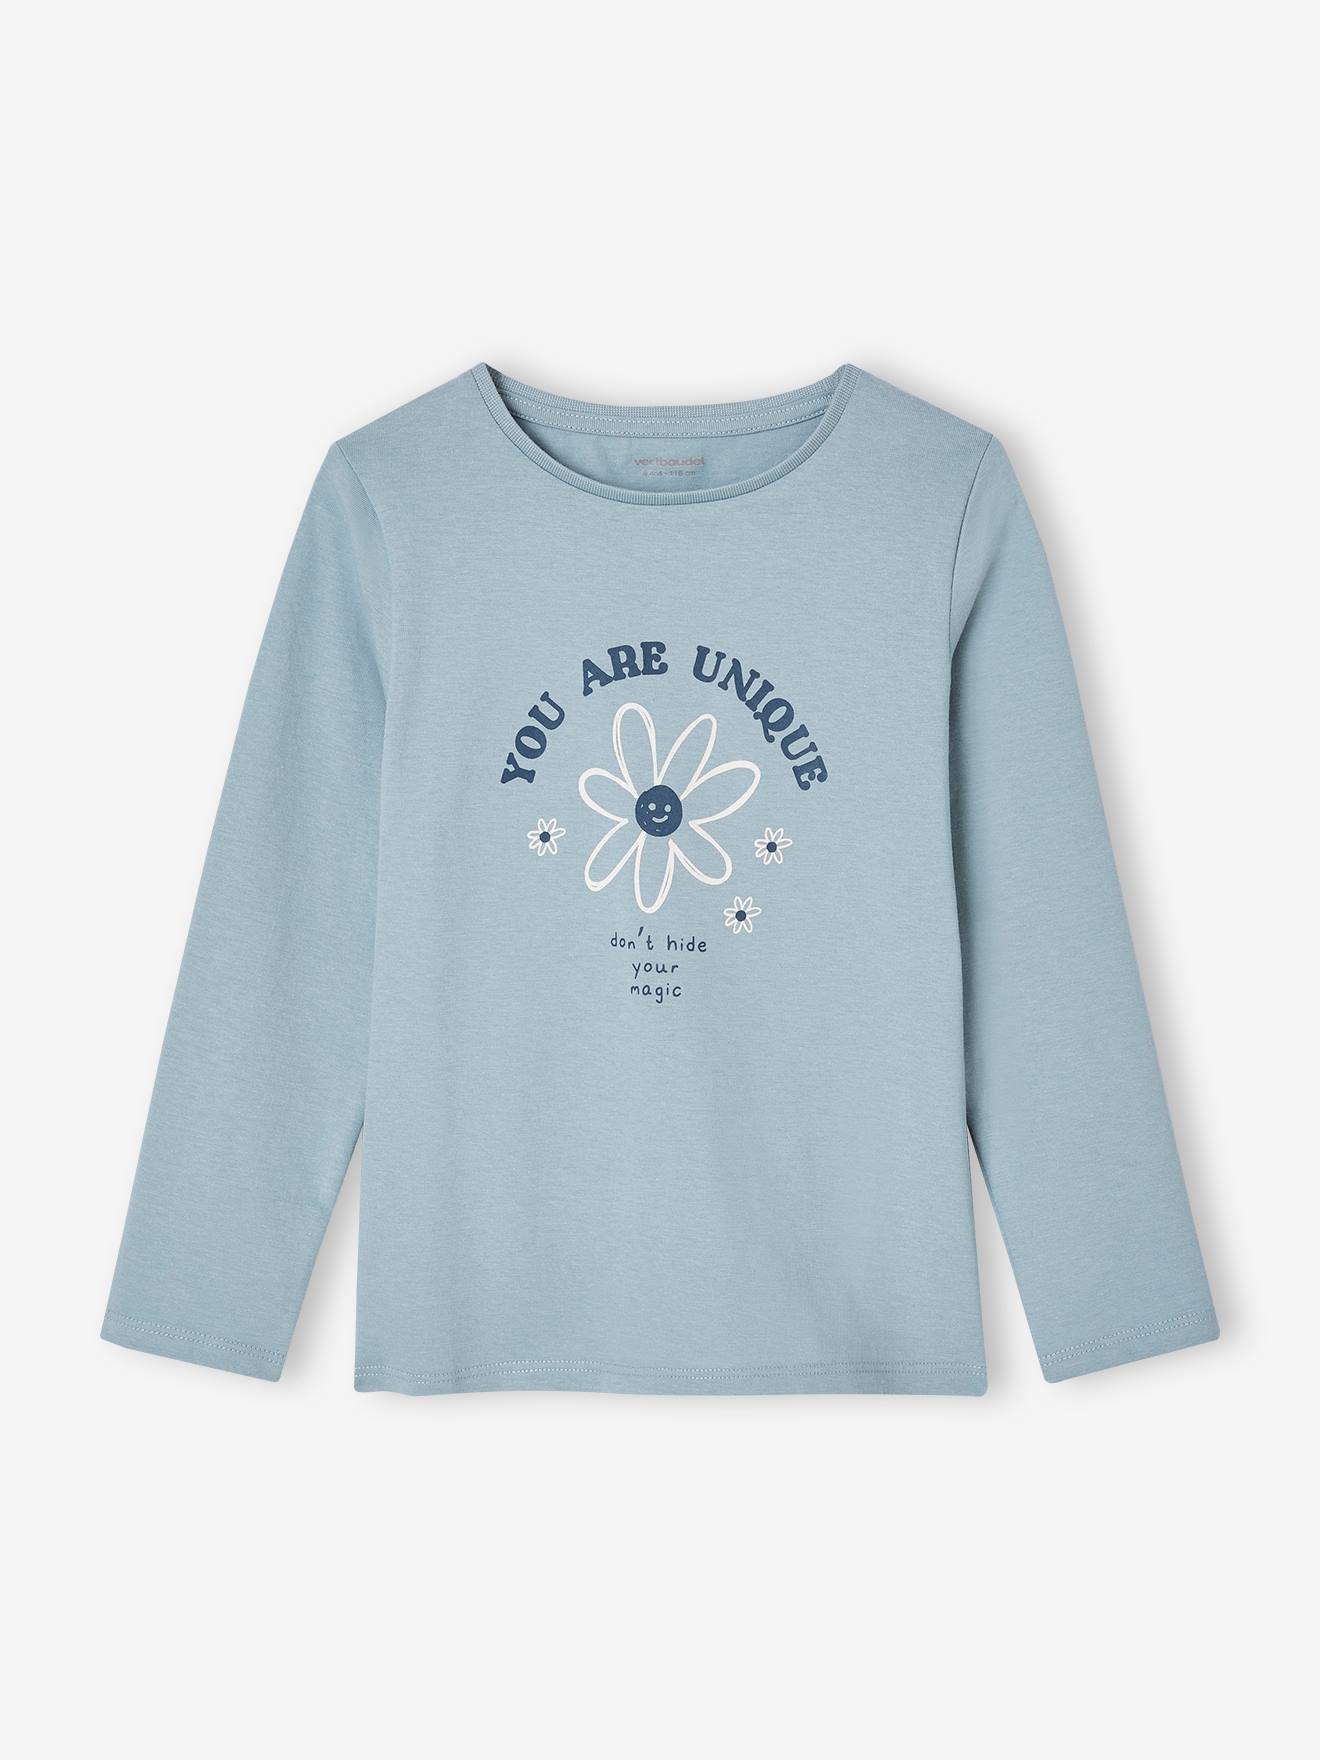 Mädchen-Oberteile - T-Shirts & Co. jetzt online kaufen! - vertbaudet